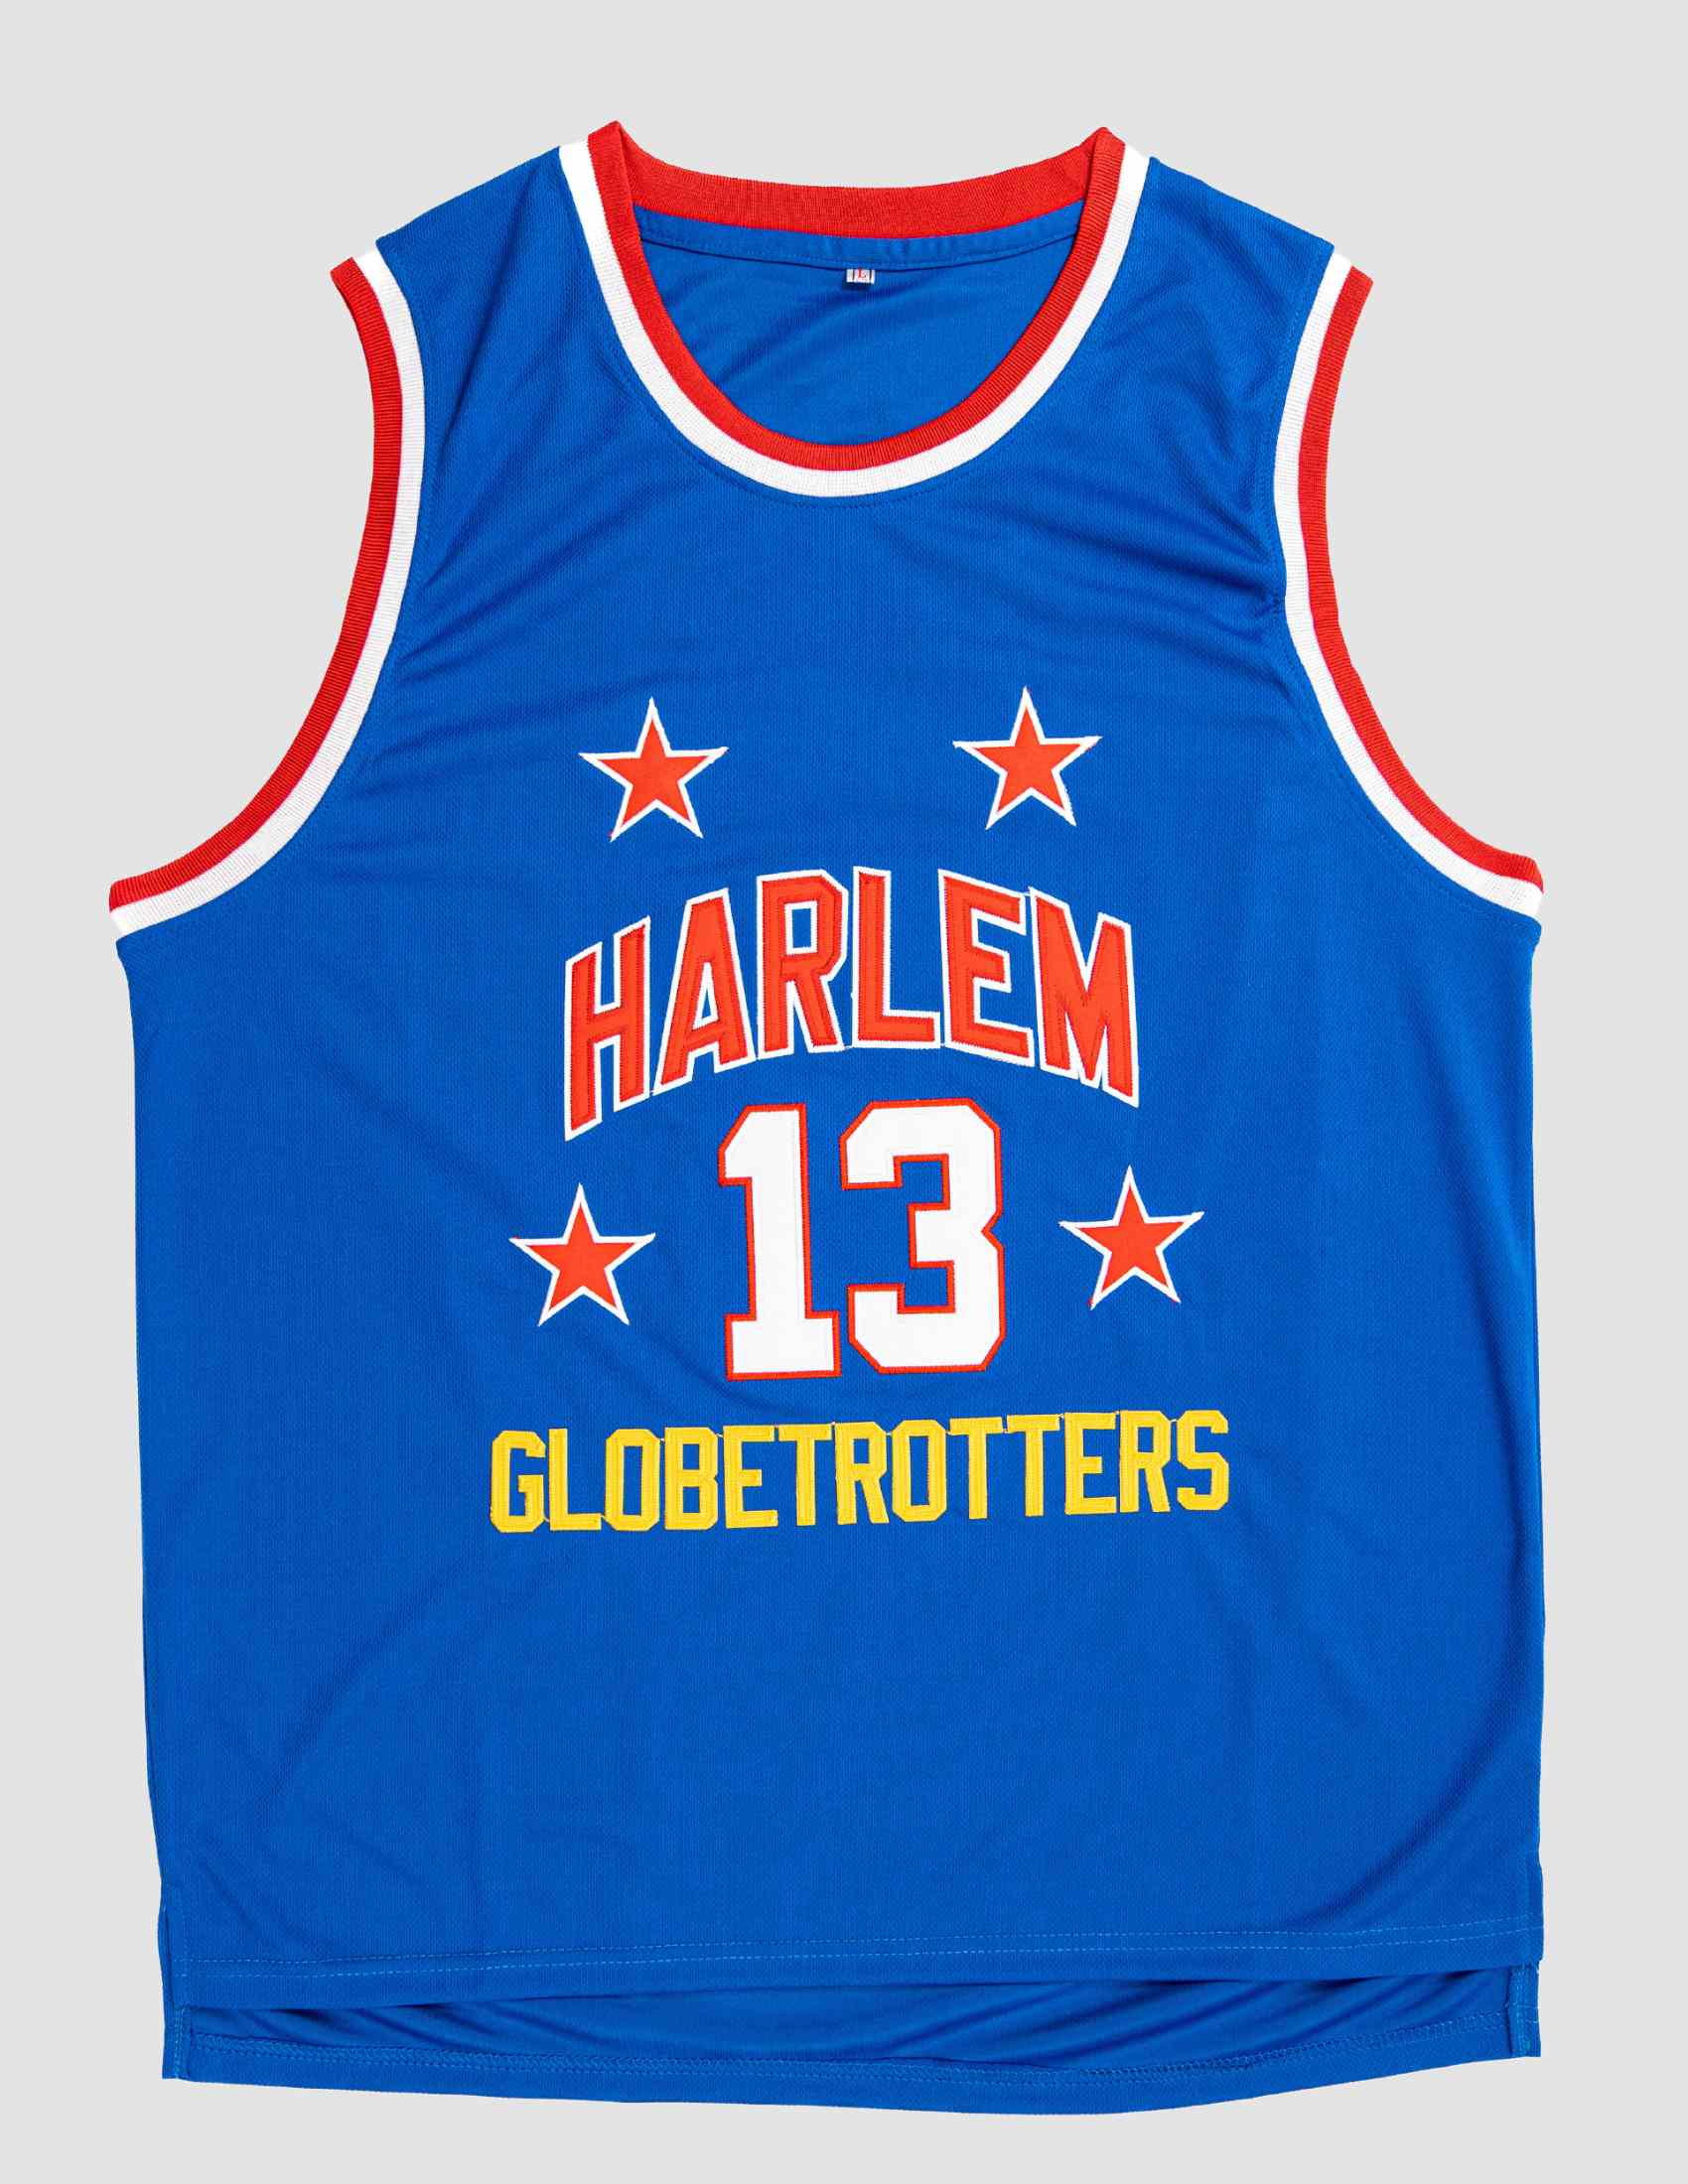 Harlem Globetrotters - Did you know? Basketball legend Wilt